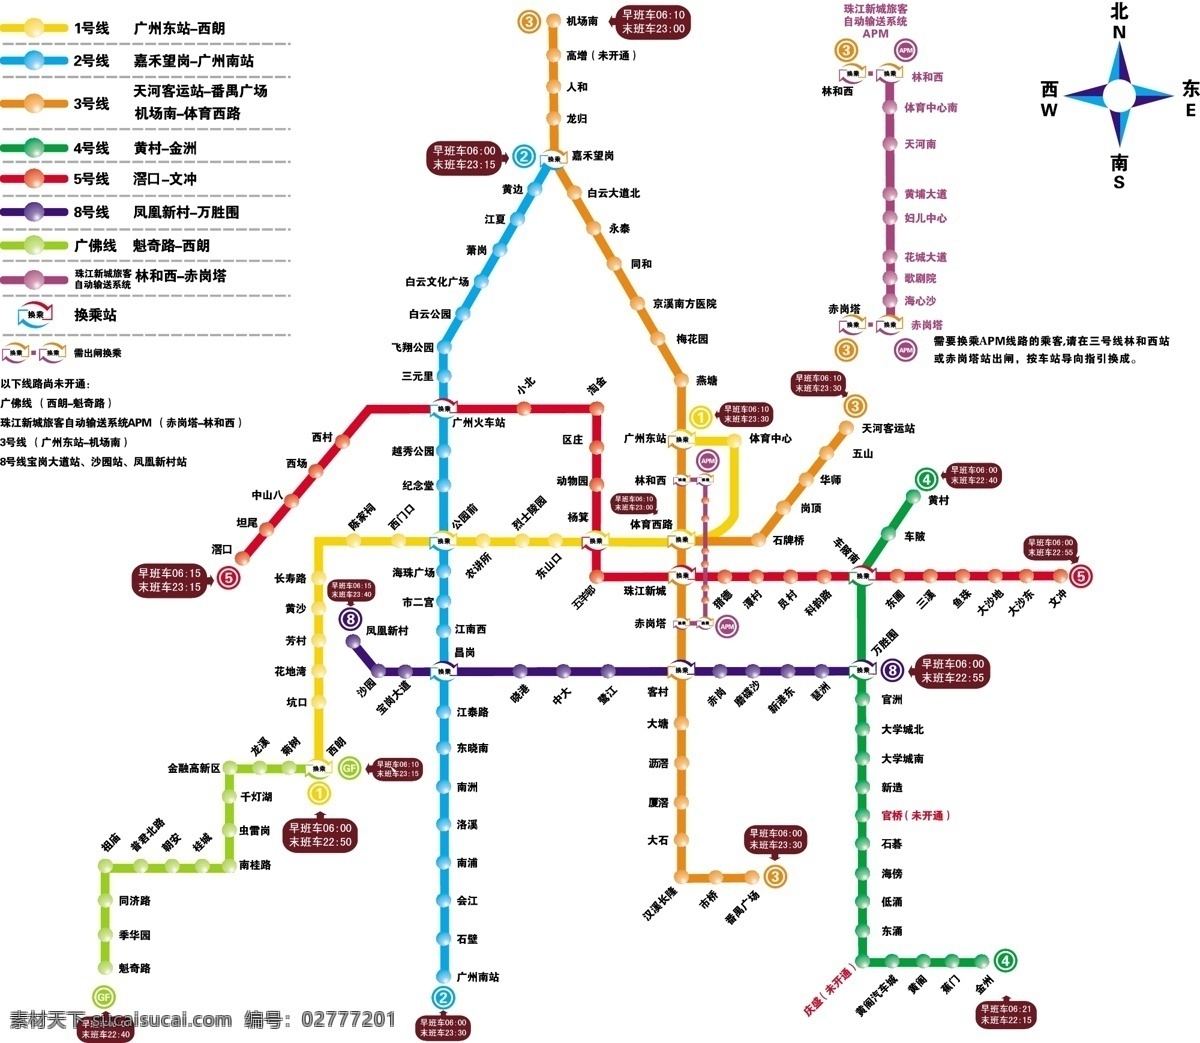 广州 地铁 线路图 公共标识标志 标识标志图标 矢量